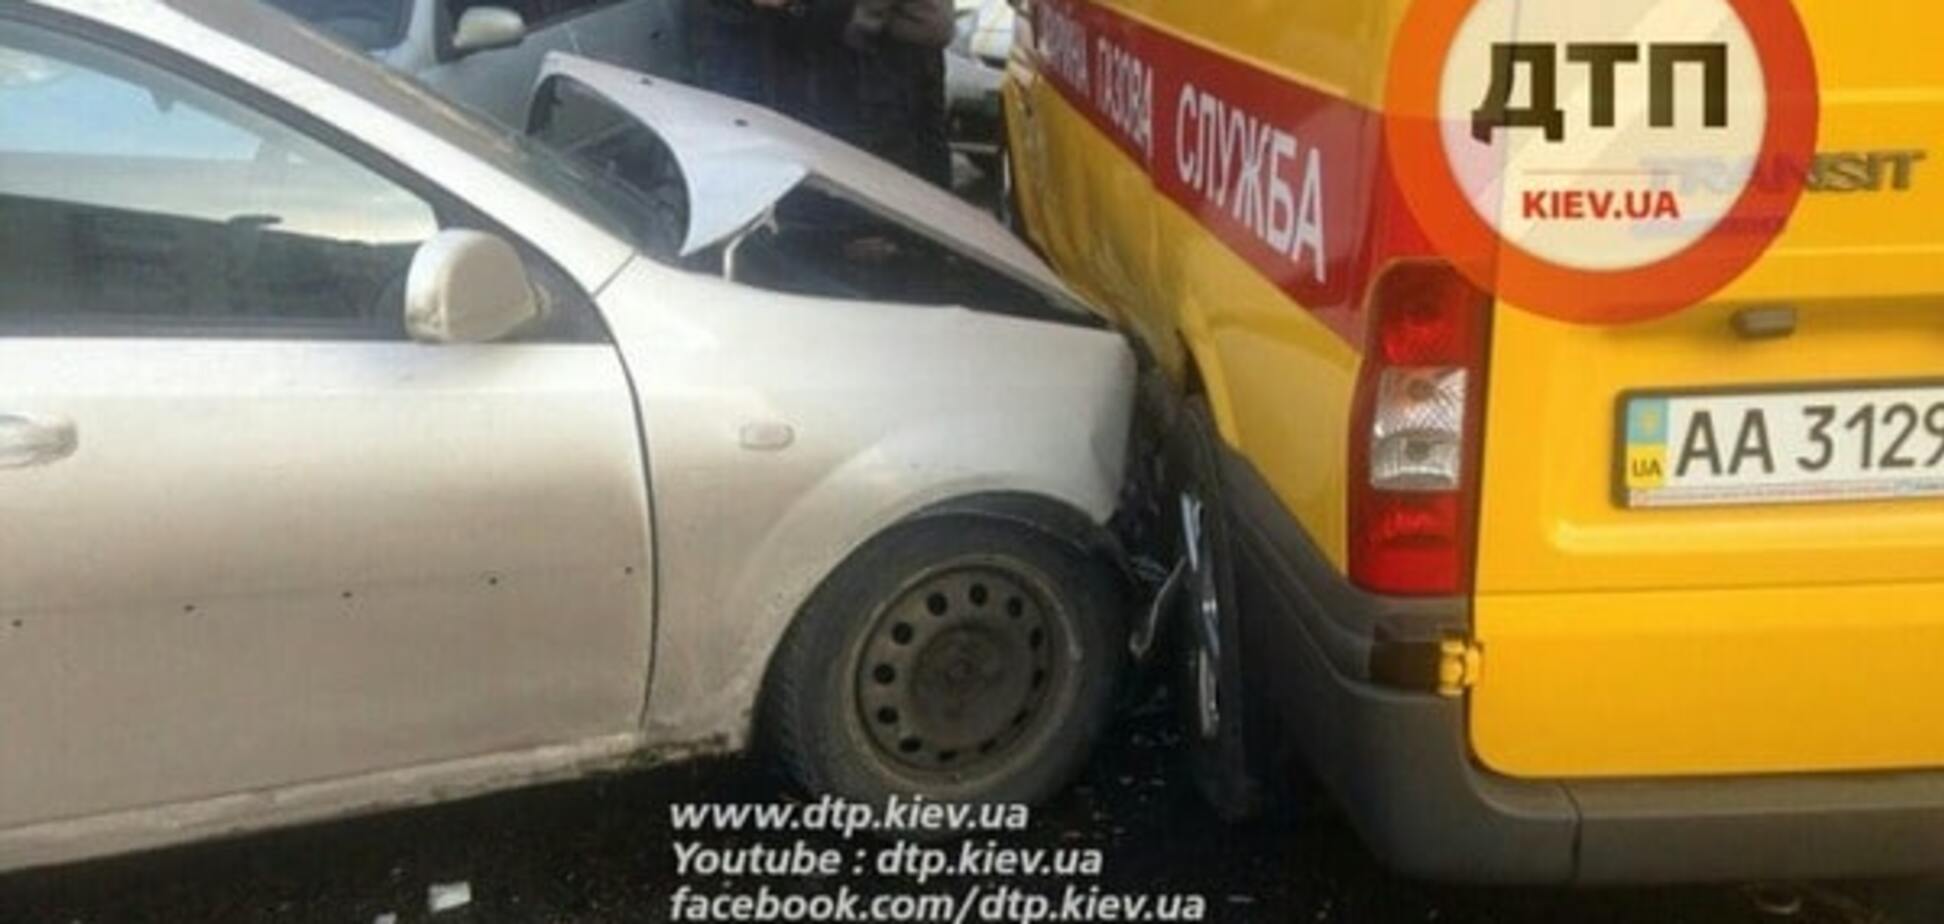 Поддал газу: в Киеве Chevrolet врезался в 'аварийку' службы '104'